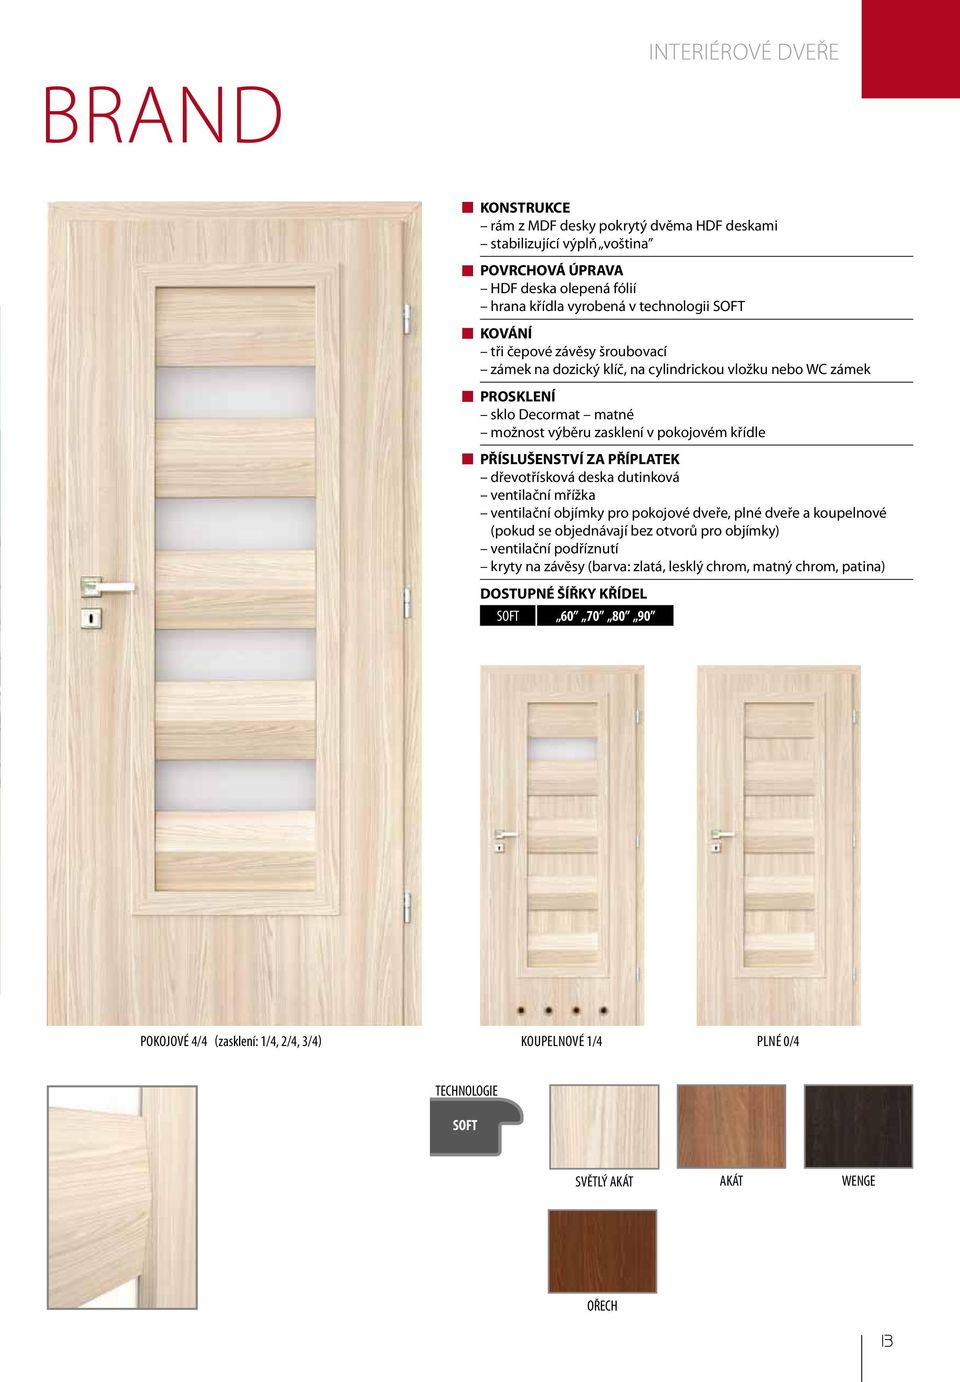 dřevotřísková deska dutinková ventilační mřížka ventilační objímky pro pokojové dveře, plné dveře a koupelnové (pokud se objednávají bez